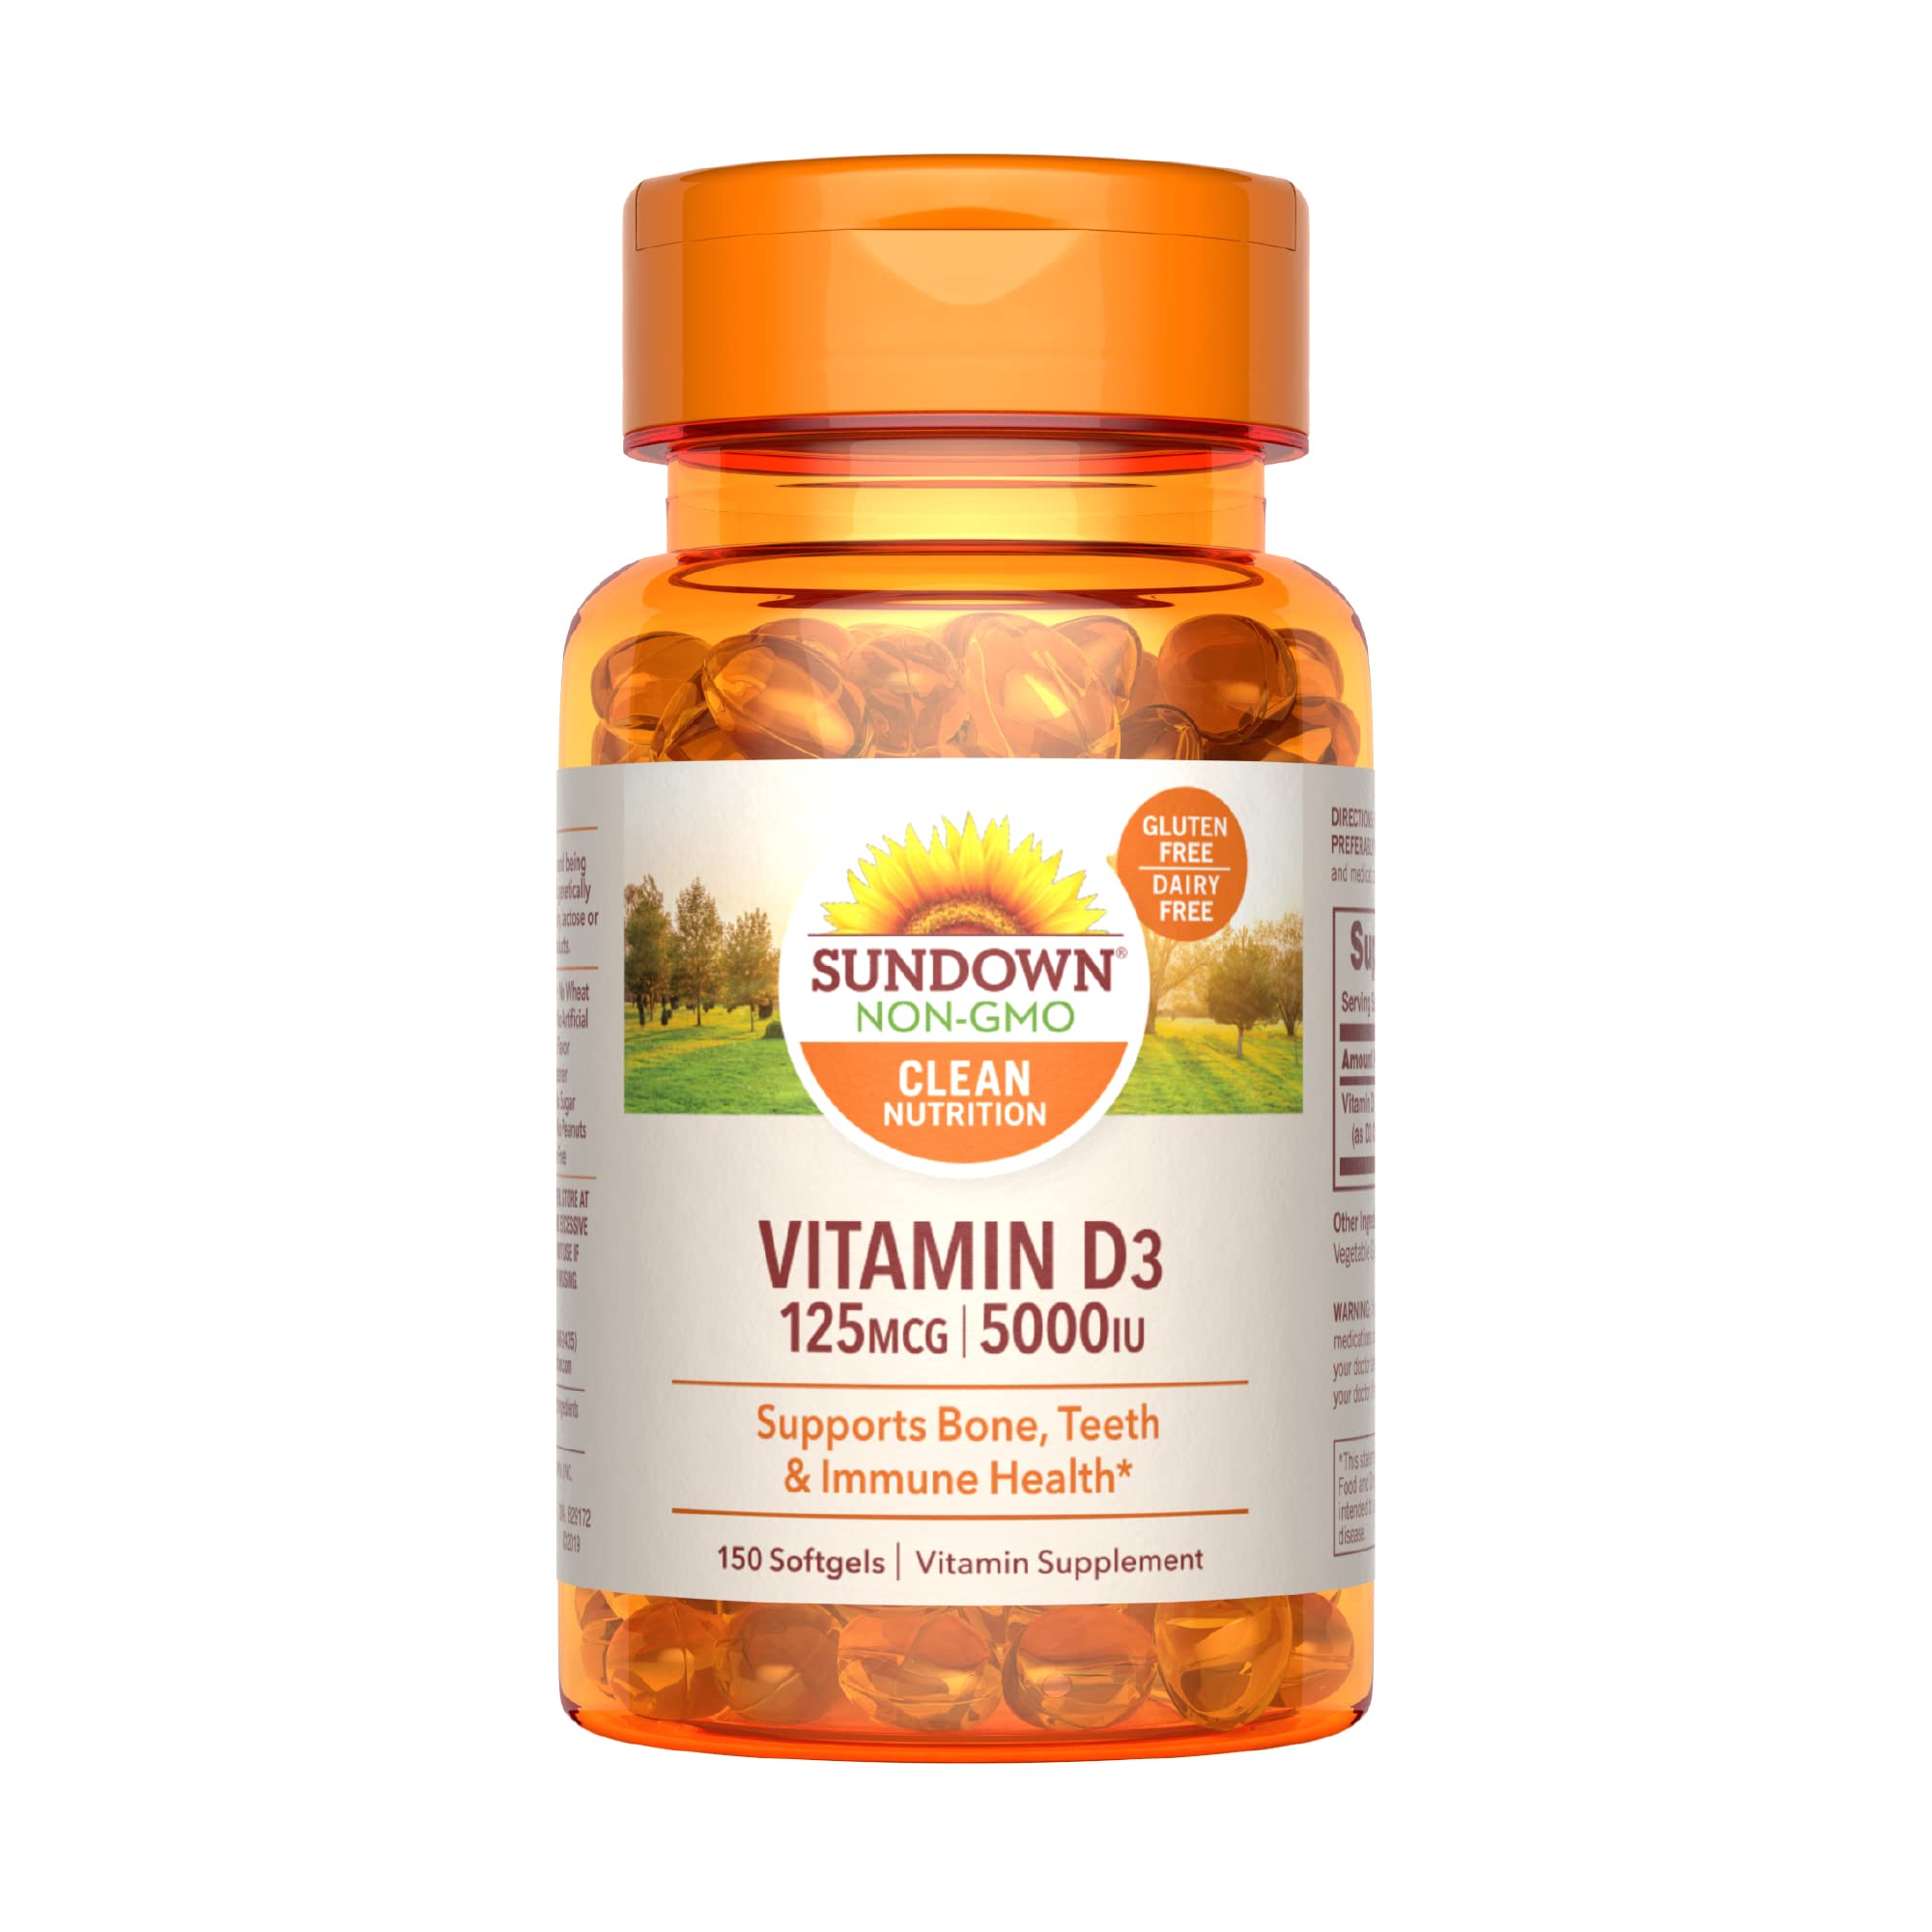 Sundown Vitamin D3 for Immune Support, Non-GMO, Dairy & Gluten-Free, No Artificial Flavors, 125mcg 5000IU Softgels, 150 Count